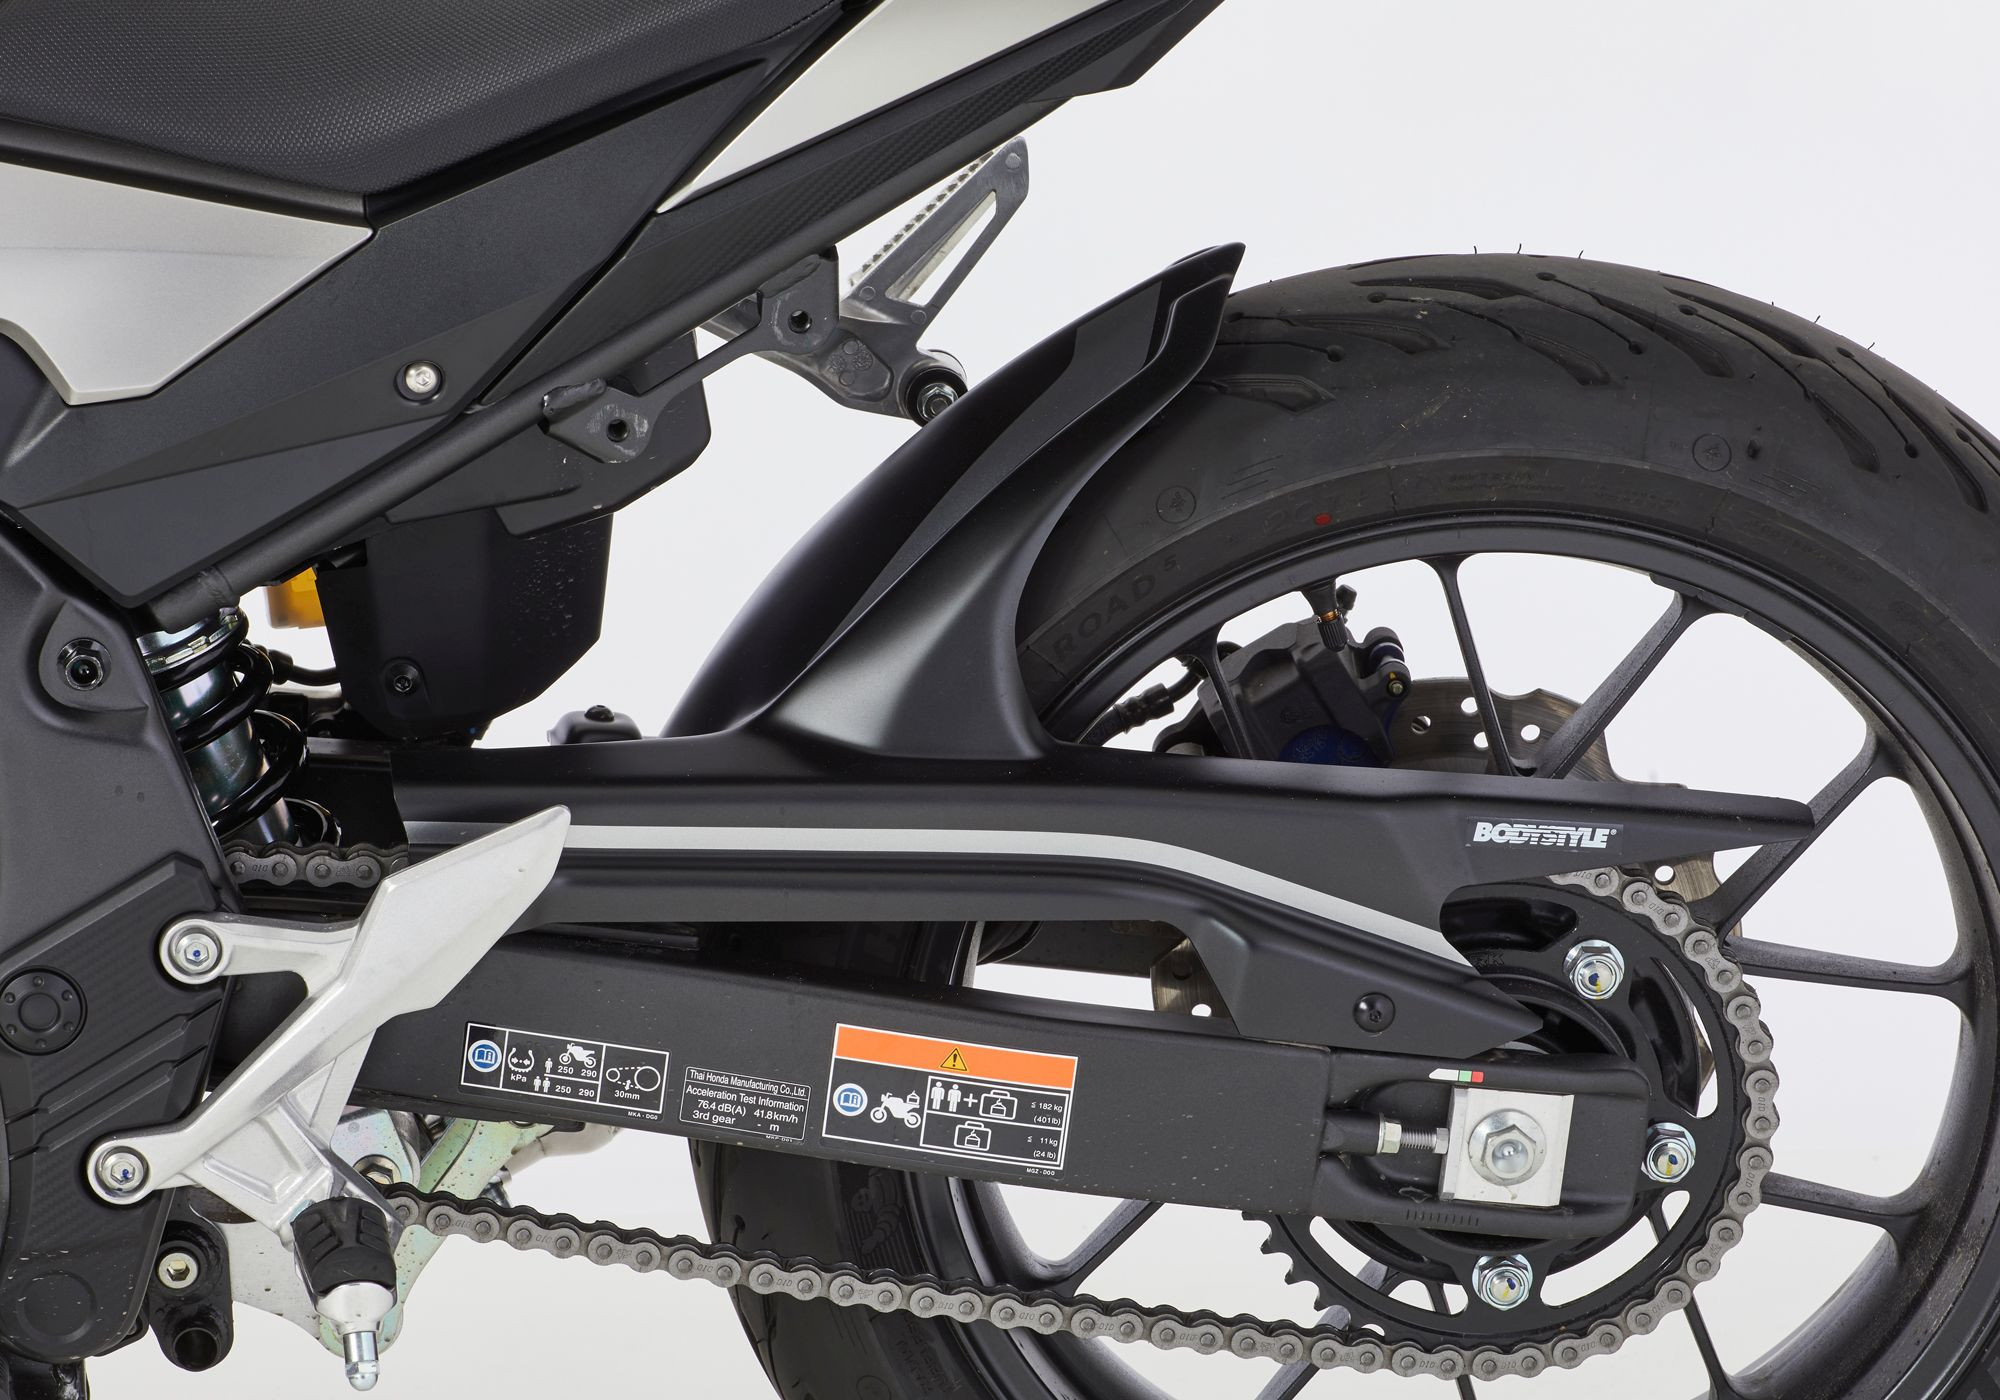 BODYSTYLE Sportsline Hinterradabdeckung schwarz Matt Gunpowder Black Metallic, NH436 ABE passt für Honda CB500F & X 2019-2021